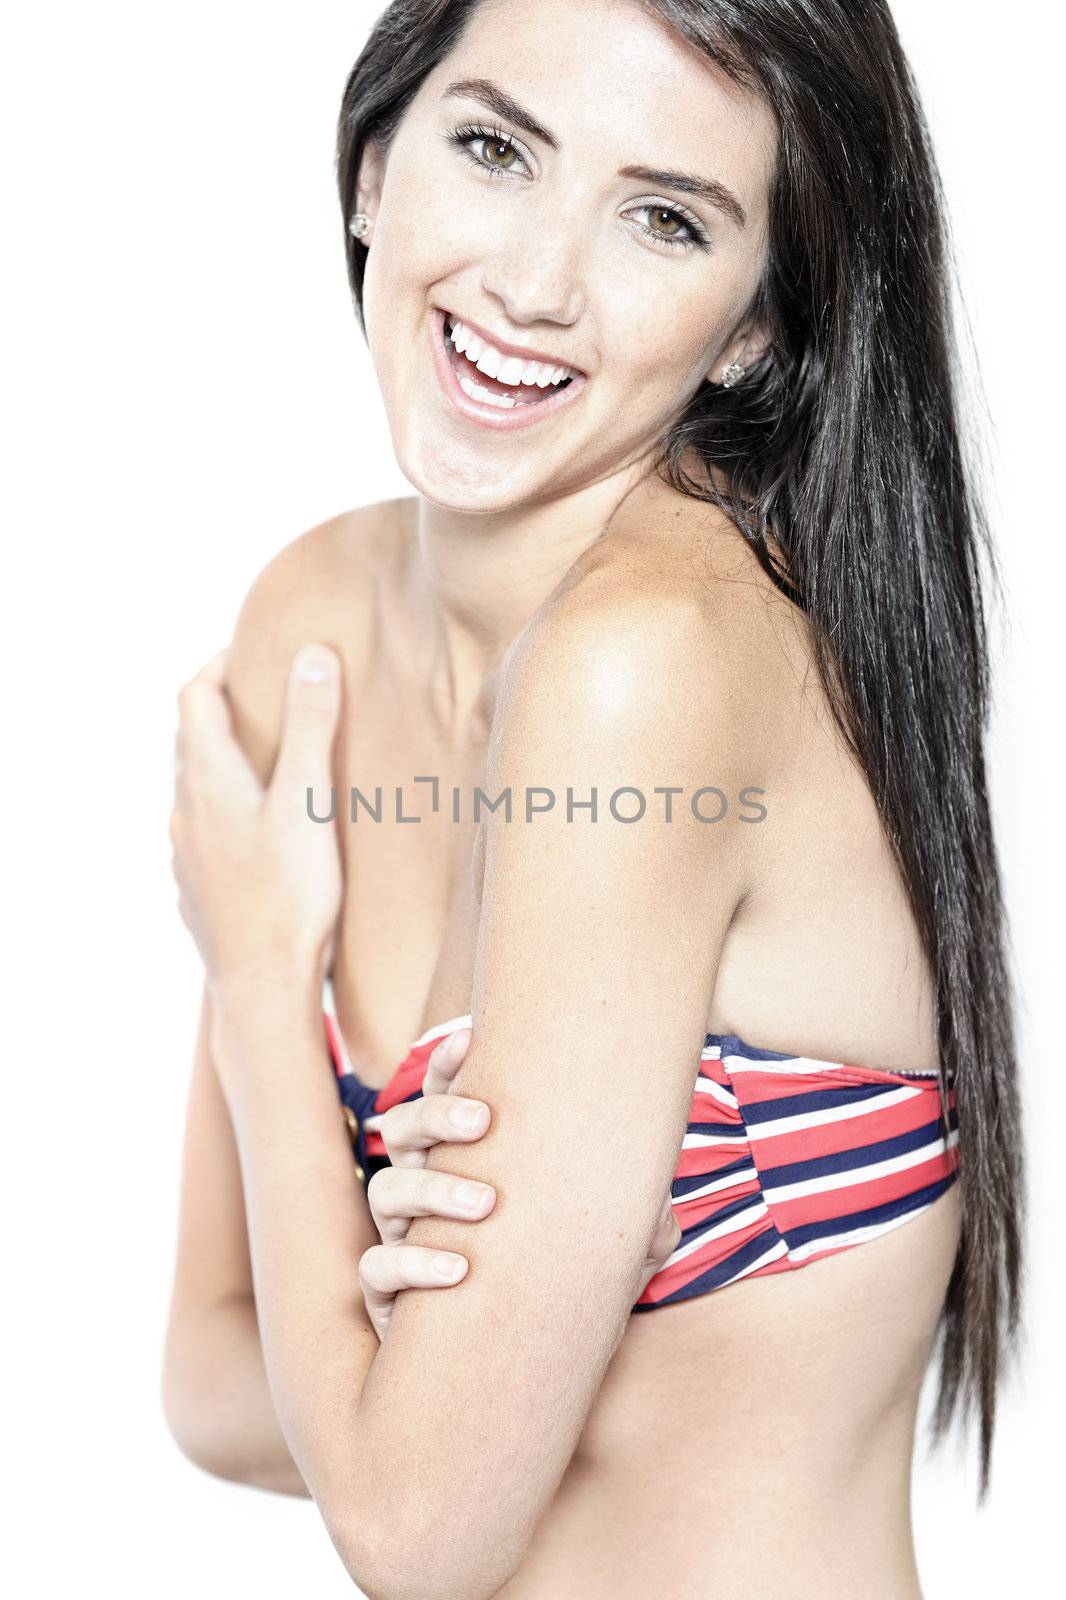 Beautiful sexy woman in red striped bikini smiling and cheerful